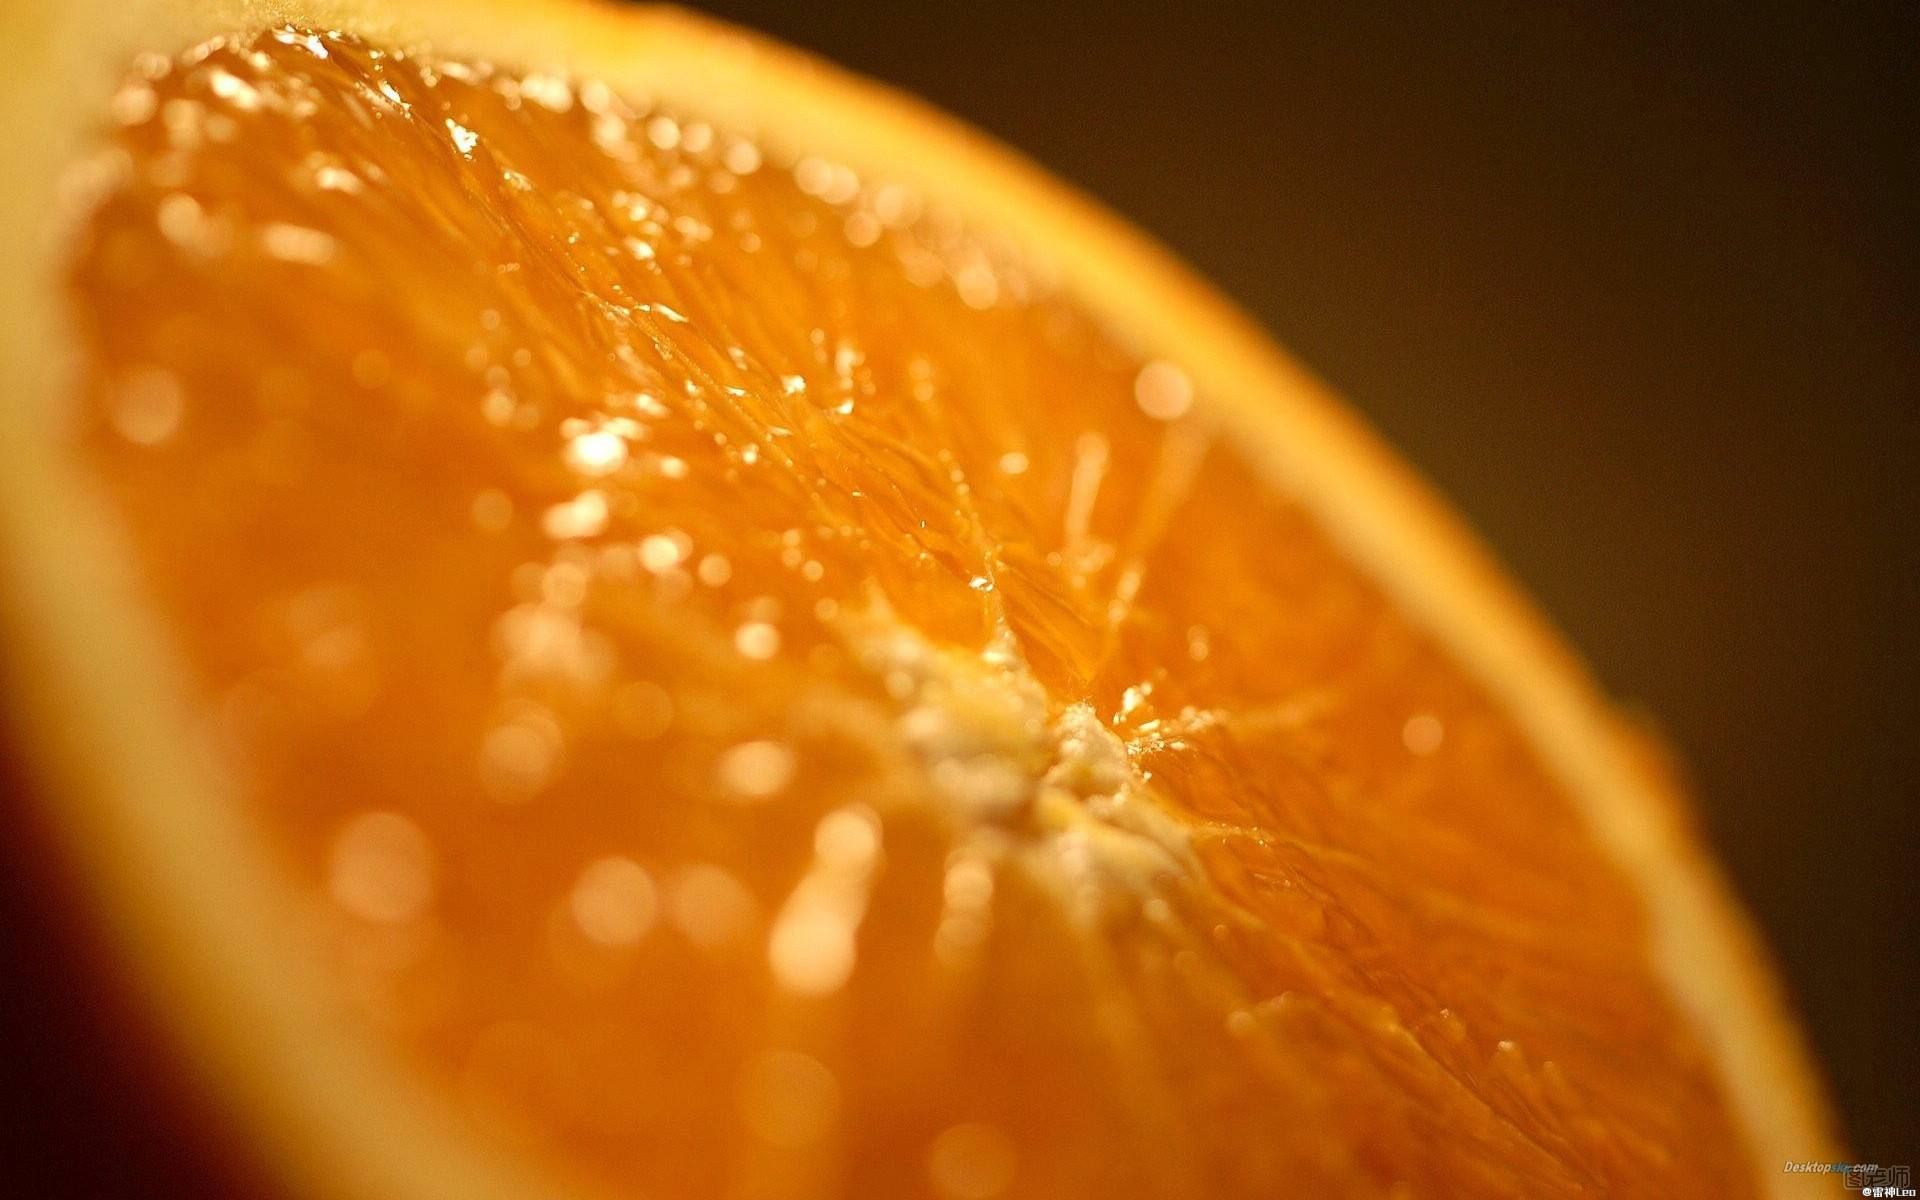 孕妇吃橙子的注意事项